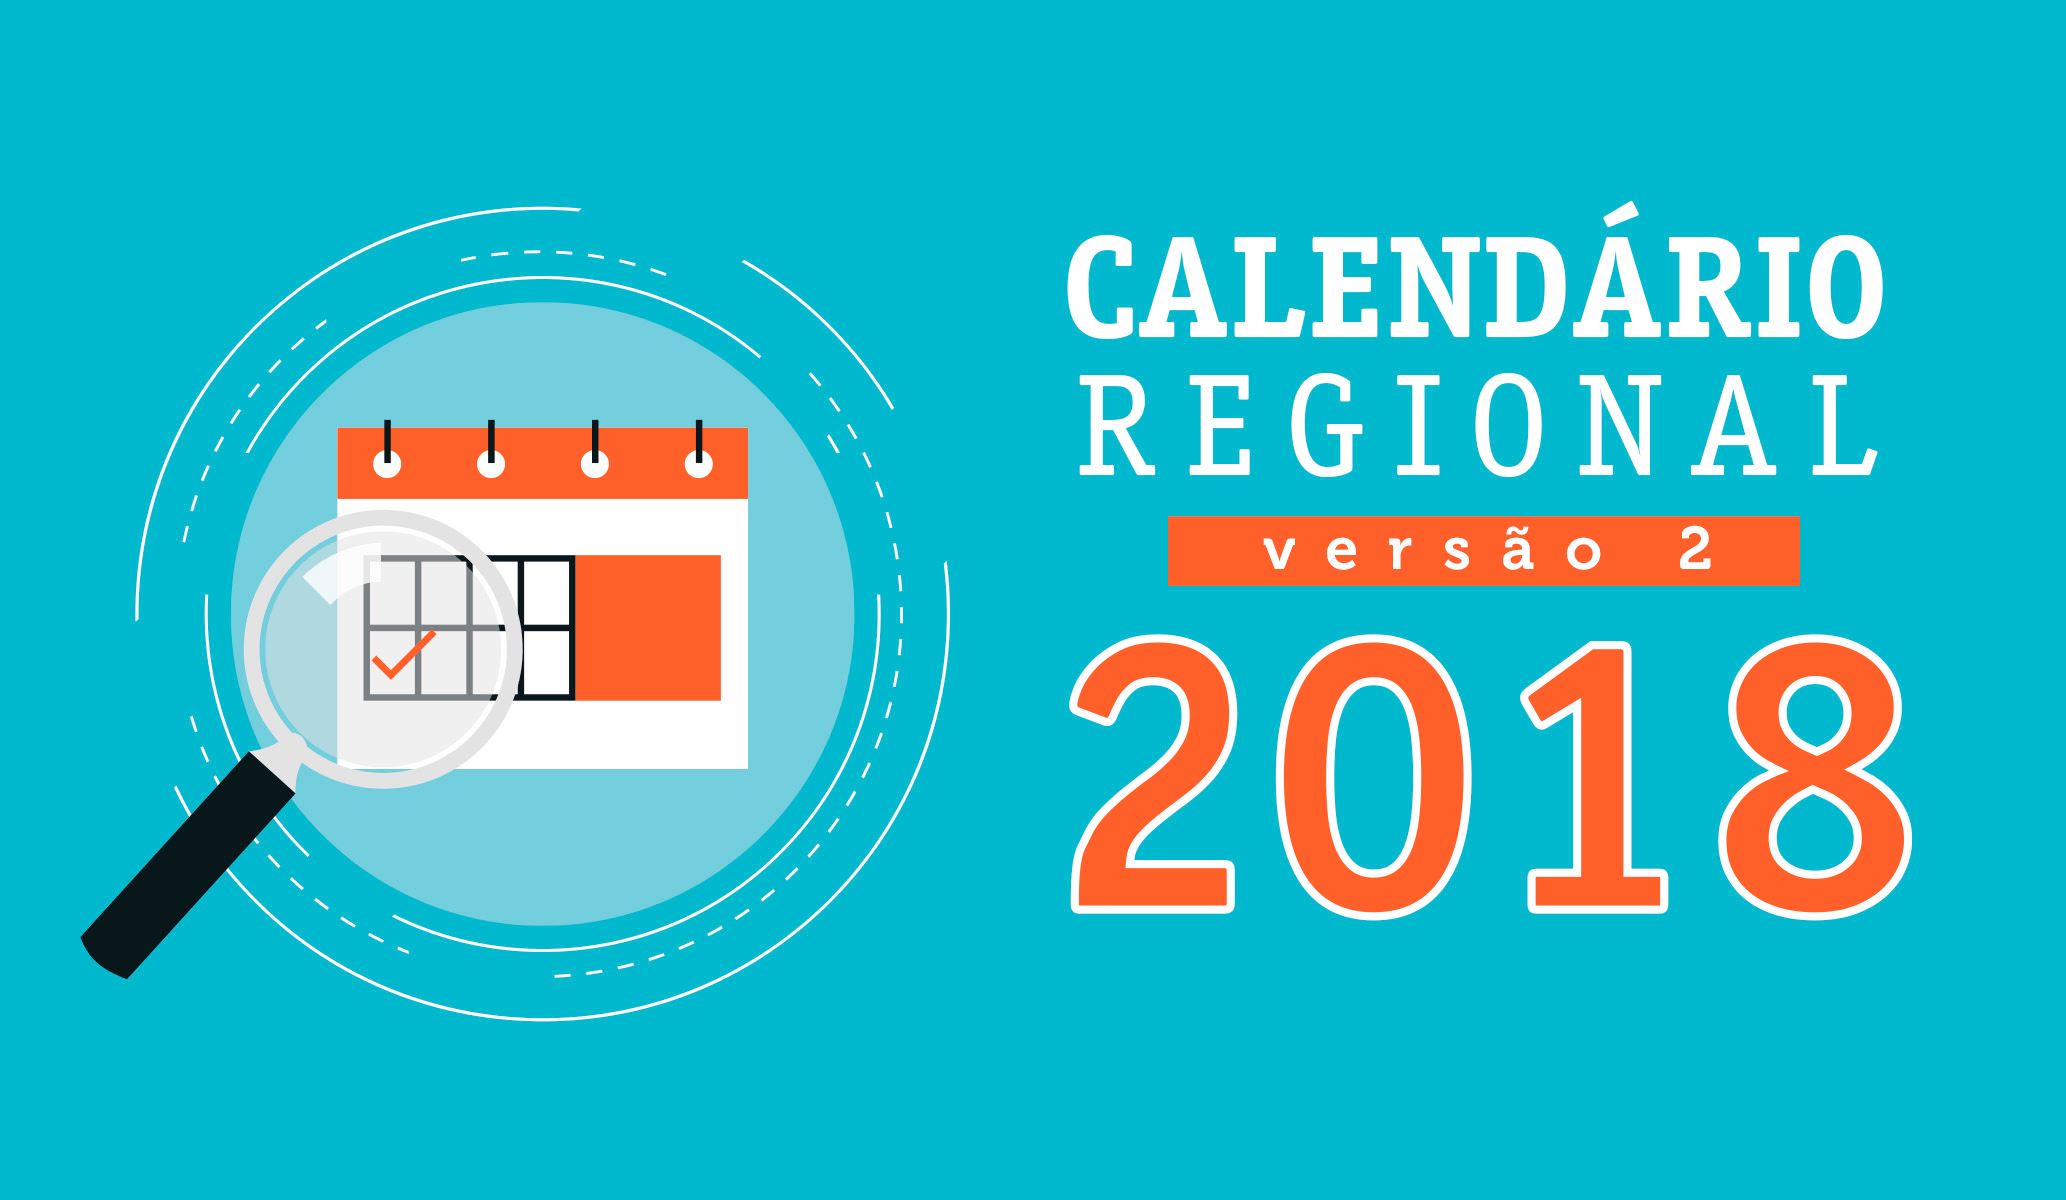 Versão 2.1 do Calendário Regional 2018